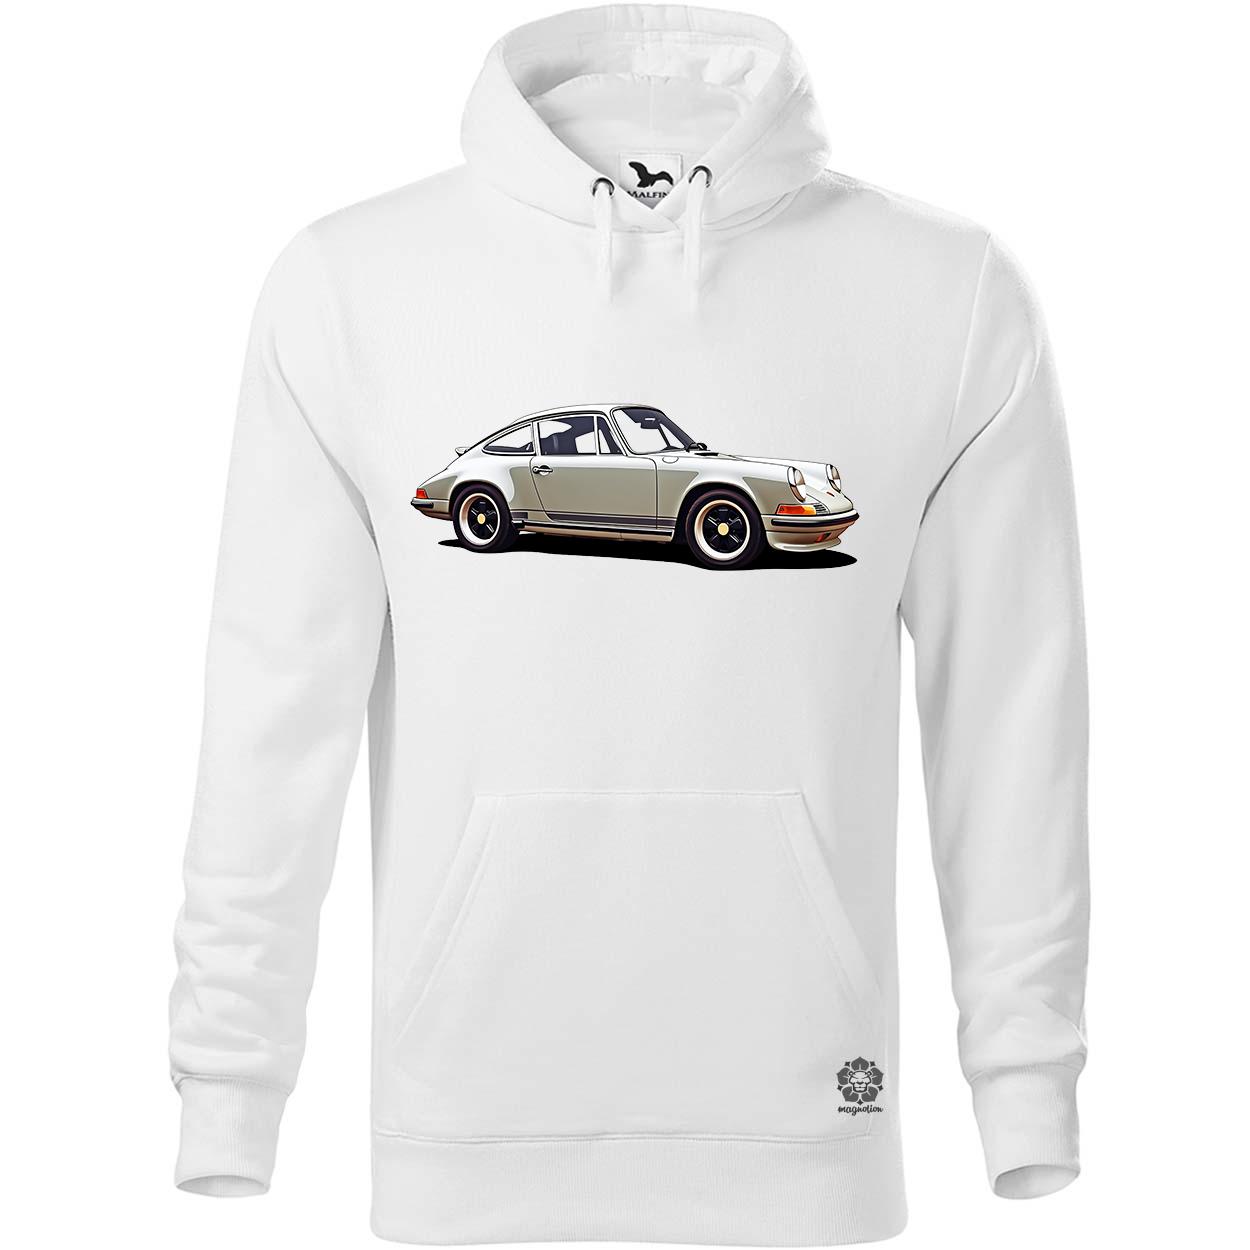 Porsche 911 rajz v1